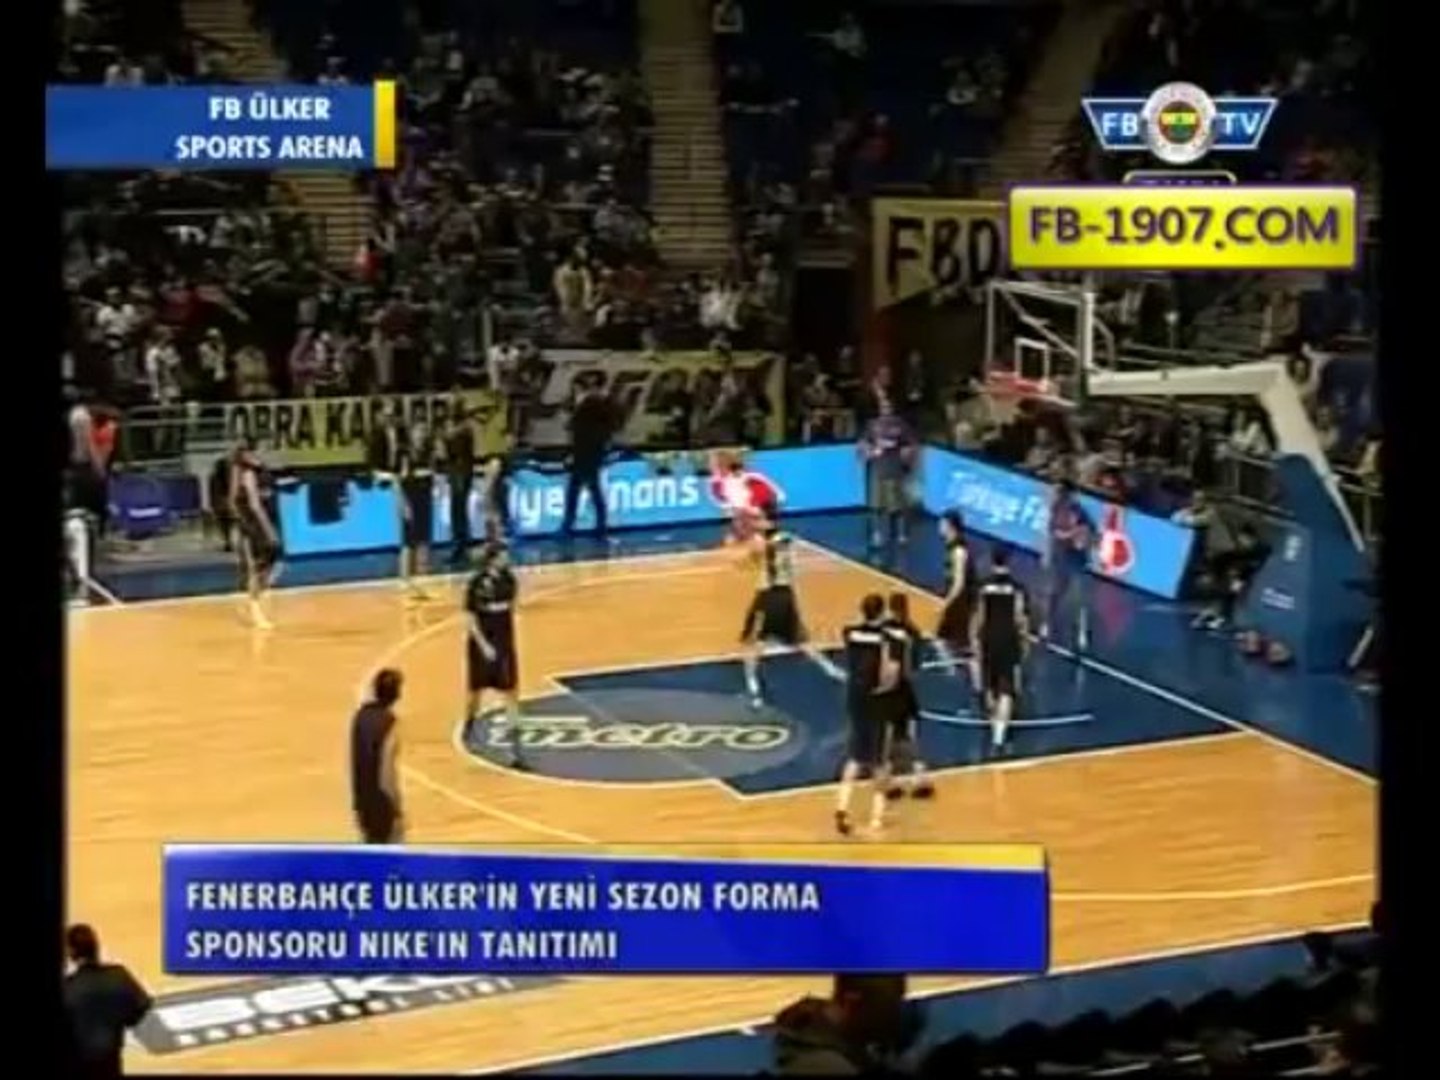 FB TV Canlı Yayın Fenerbahçe Ülker'in Yeni Forma Sponsoru Nike Tanıtımı 1  Aralık 2013 - Dailymotion Video